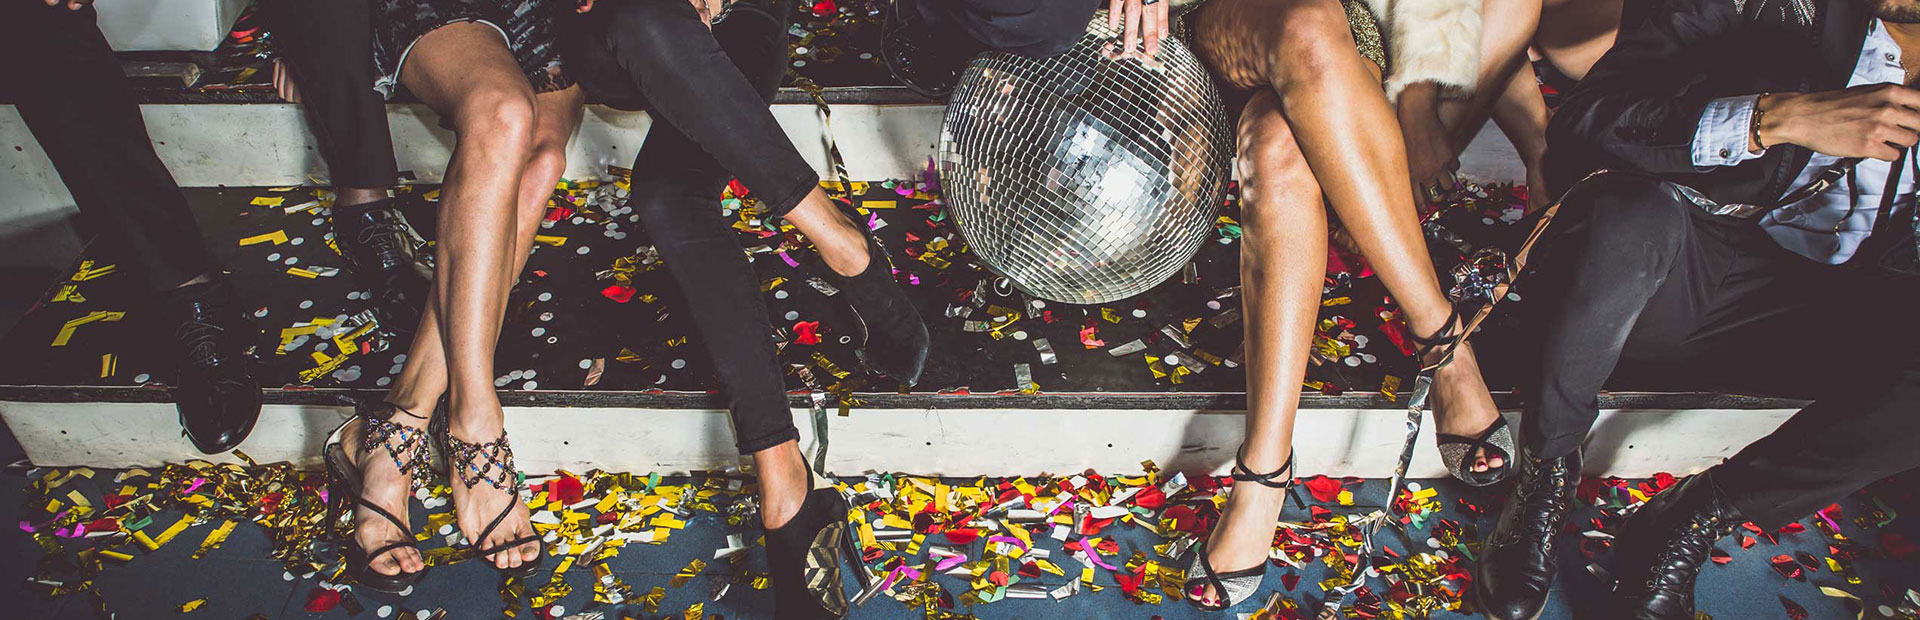 Bachelor-Gruppe beim Feiern in einer Disco mit Konfetti